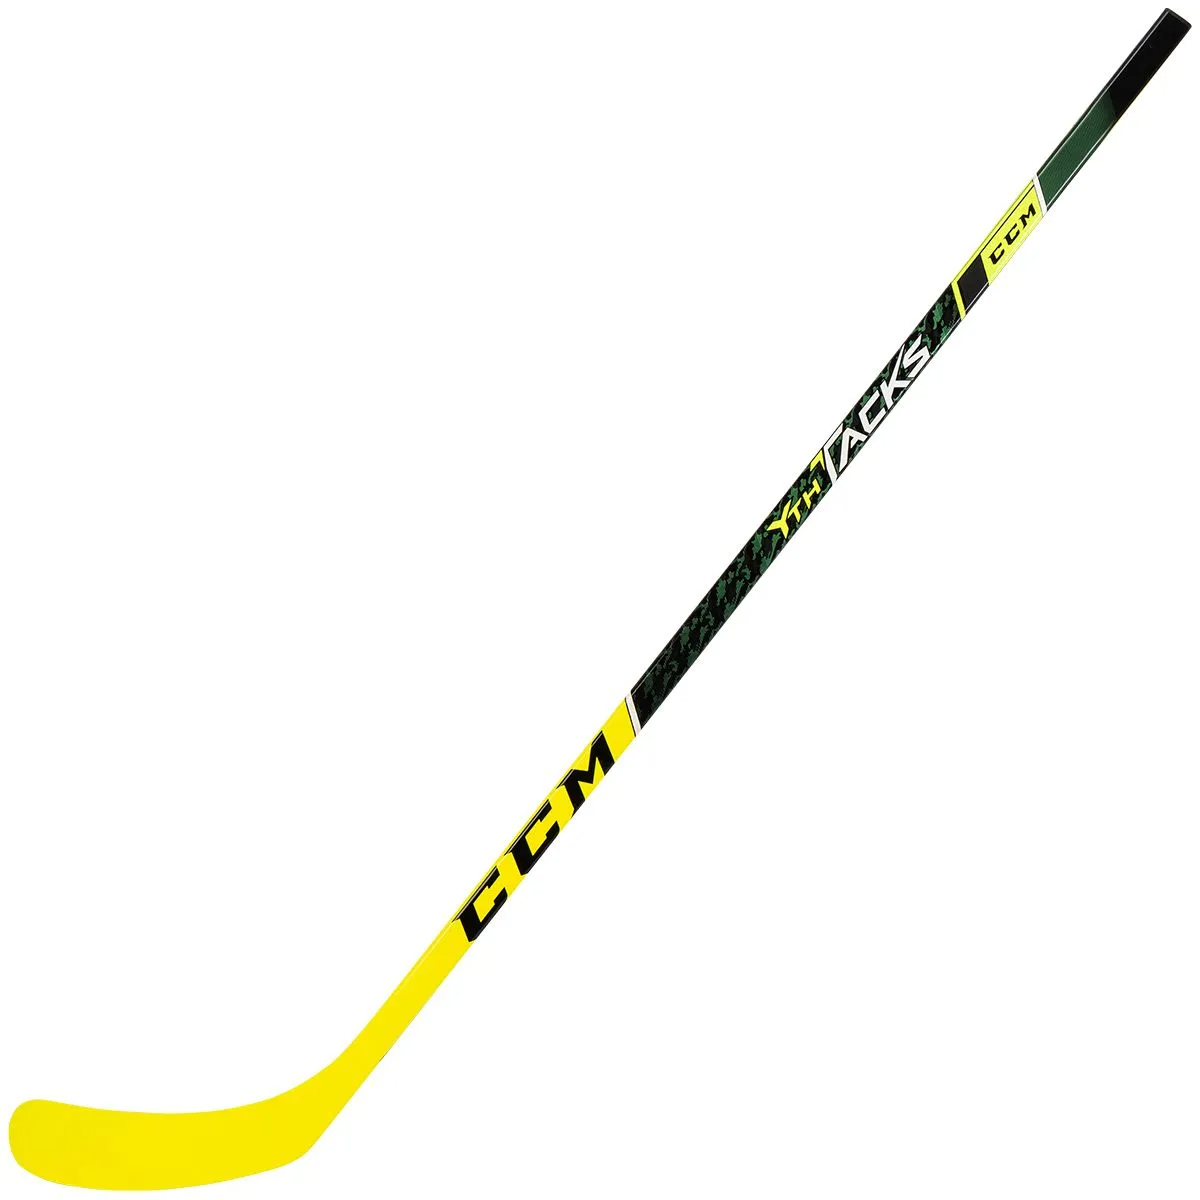 CCM Super Tacks AS3 Youth Composite Hockey Stick